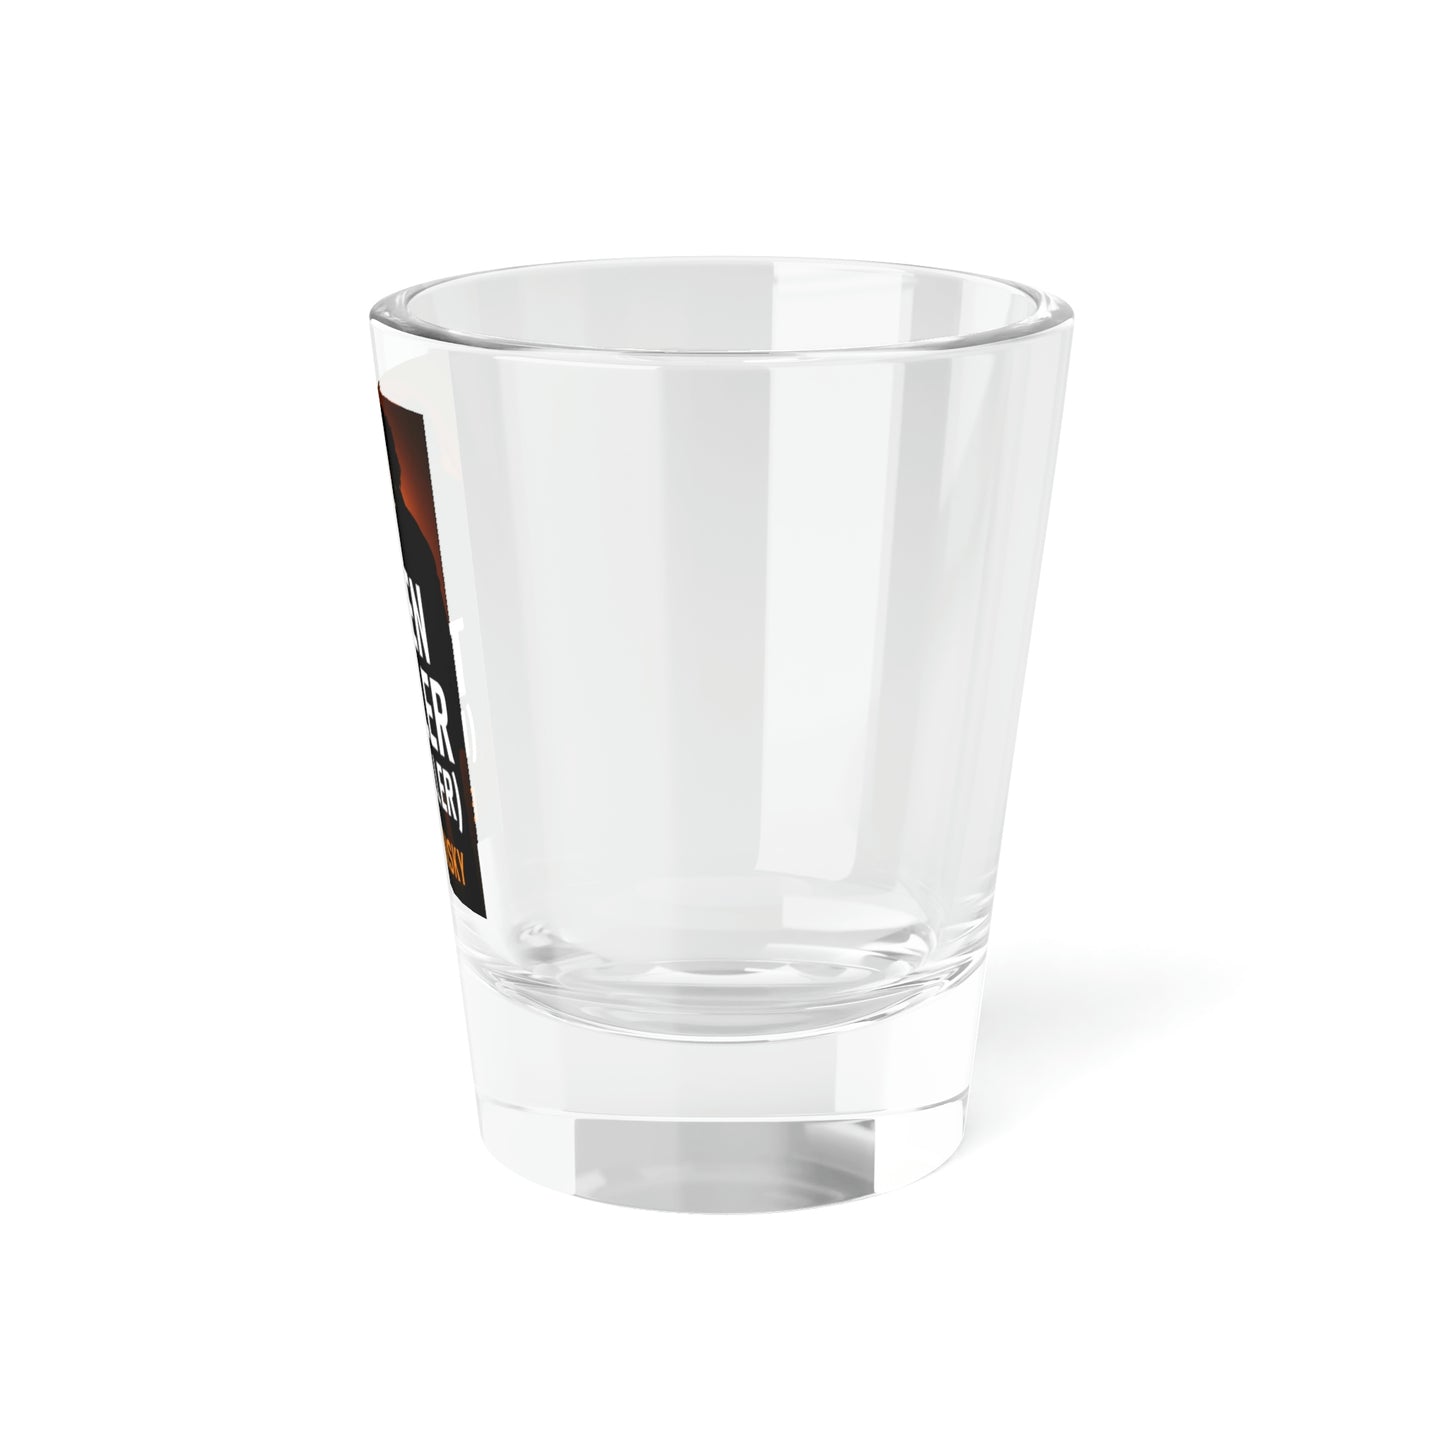 Auden Triller (Is A Killer) - Shot Glass, 1.5oz